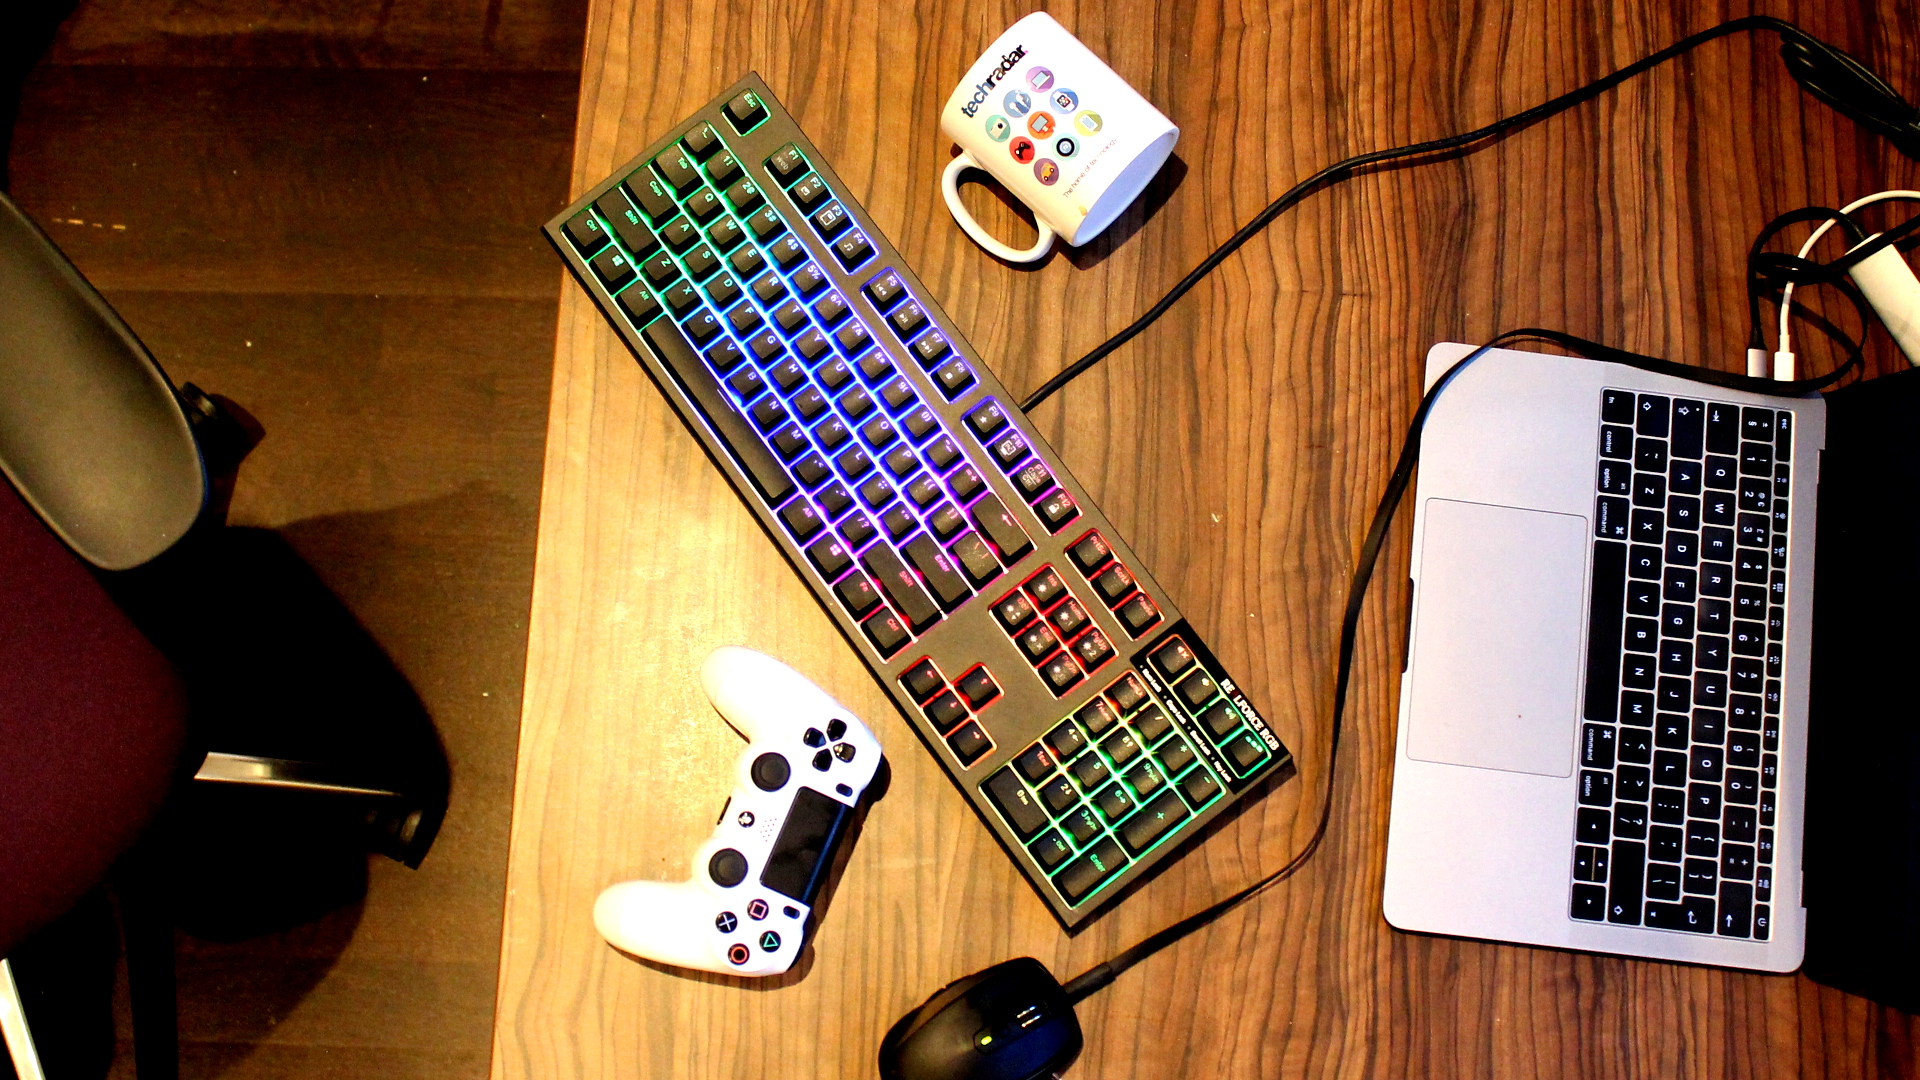 Bright gaming keyboard